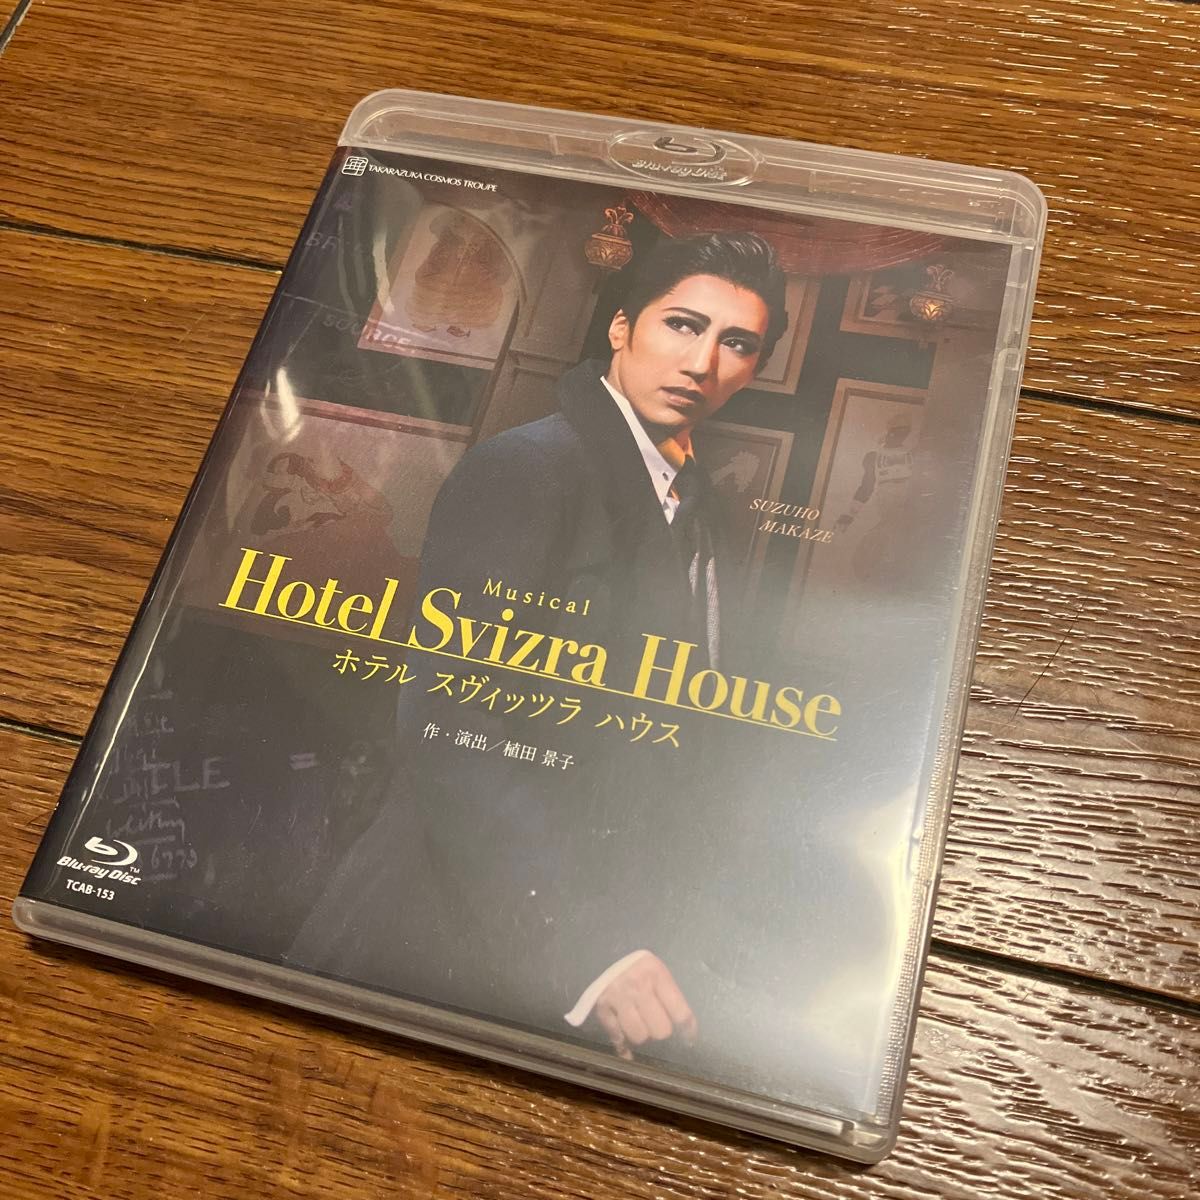 宙組梅田芸術劇場公演 「Hotel Svizre House ホテル スヴィッツラ ハウス」 [Blu-ray] ブルーレイ